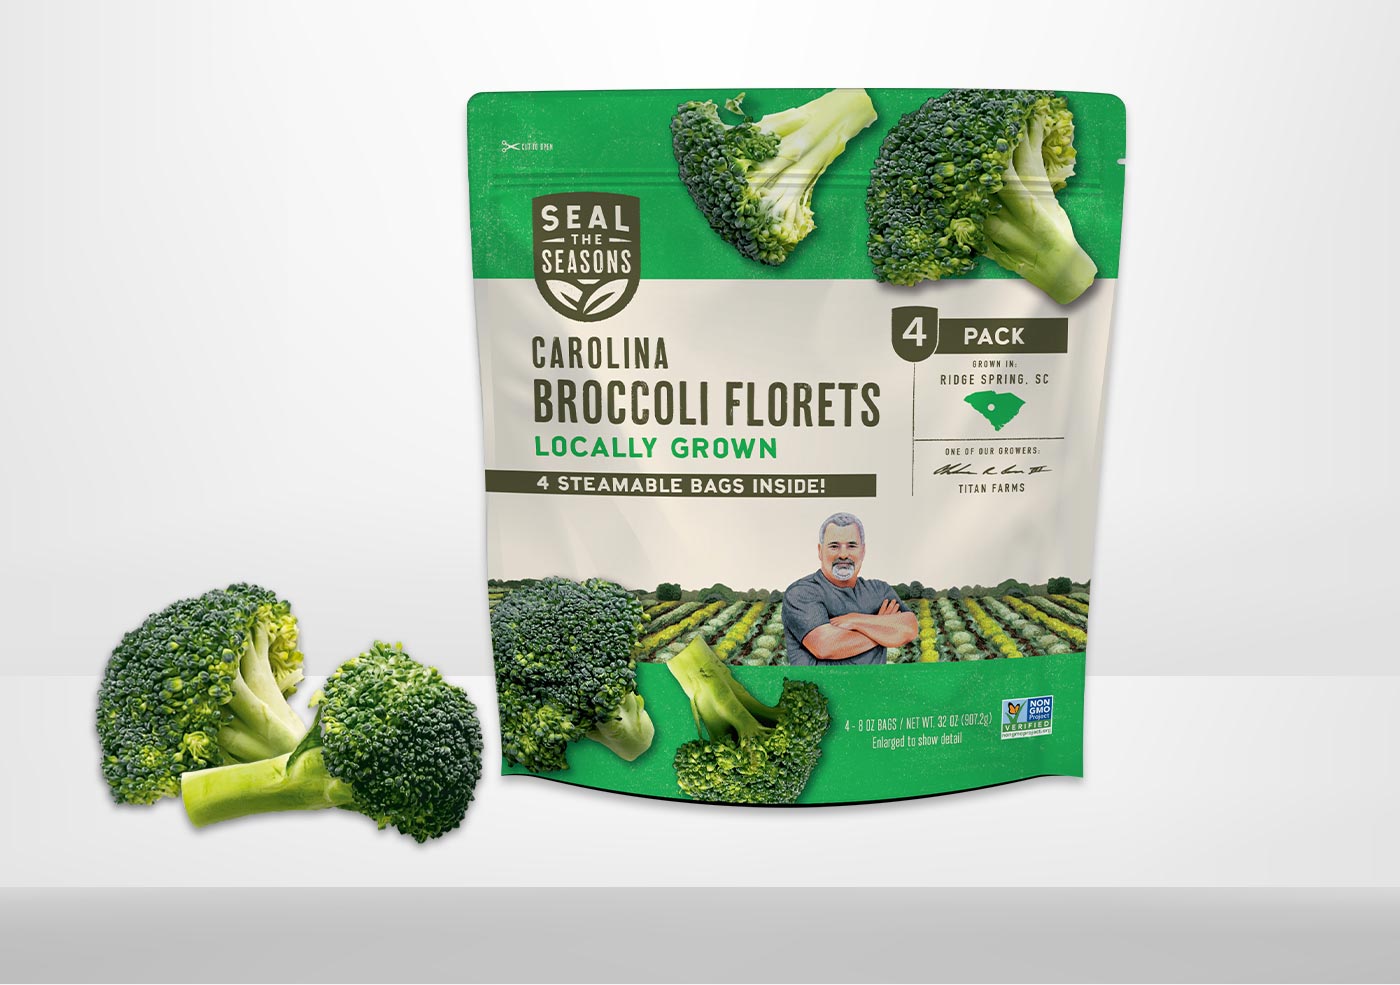 North Carolina Broccoli Florets